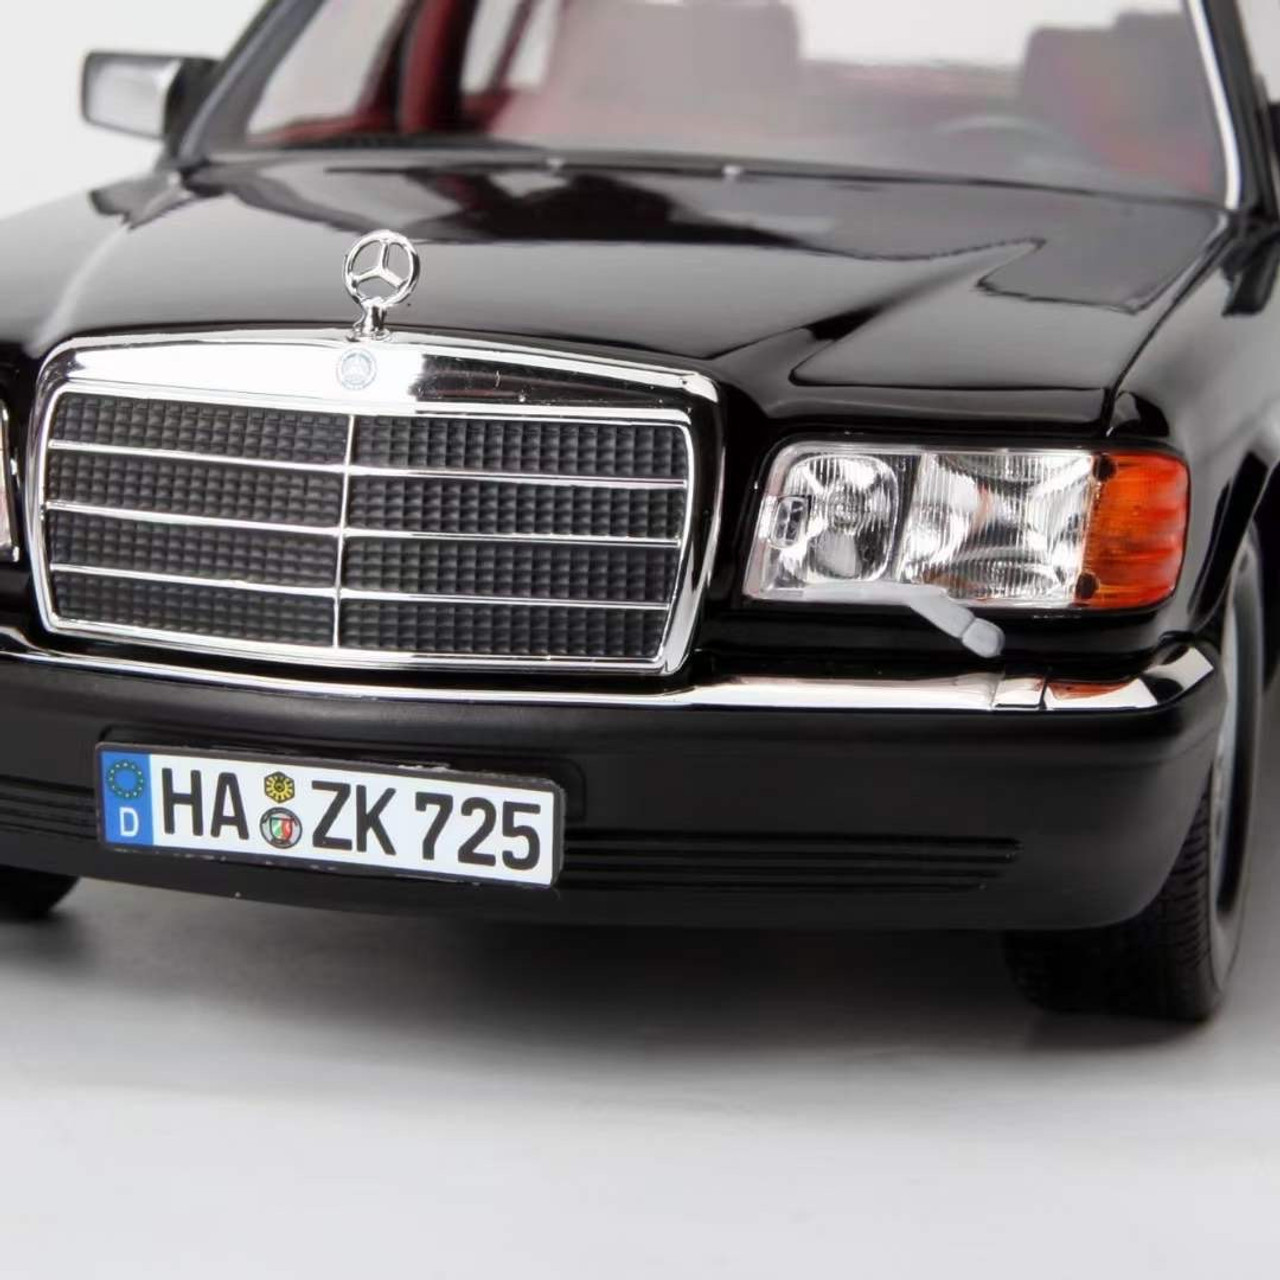 Mercedes-Benz 560 SEL 1989 Black 1/18 Norev 183793